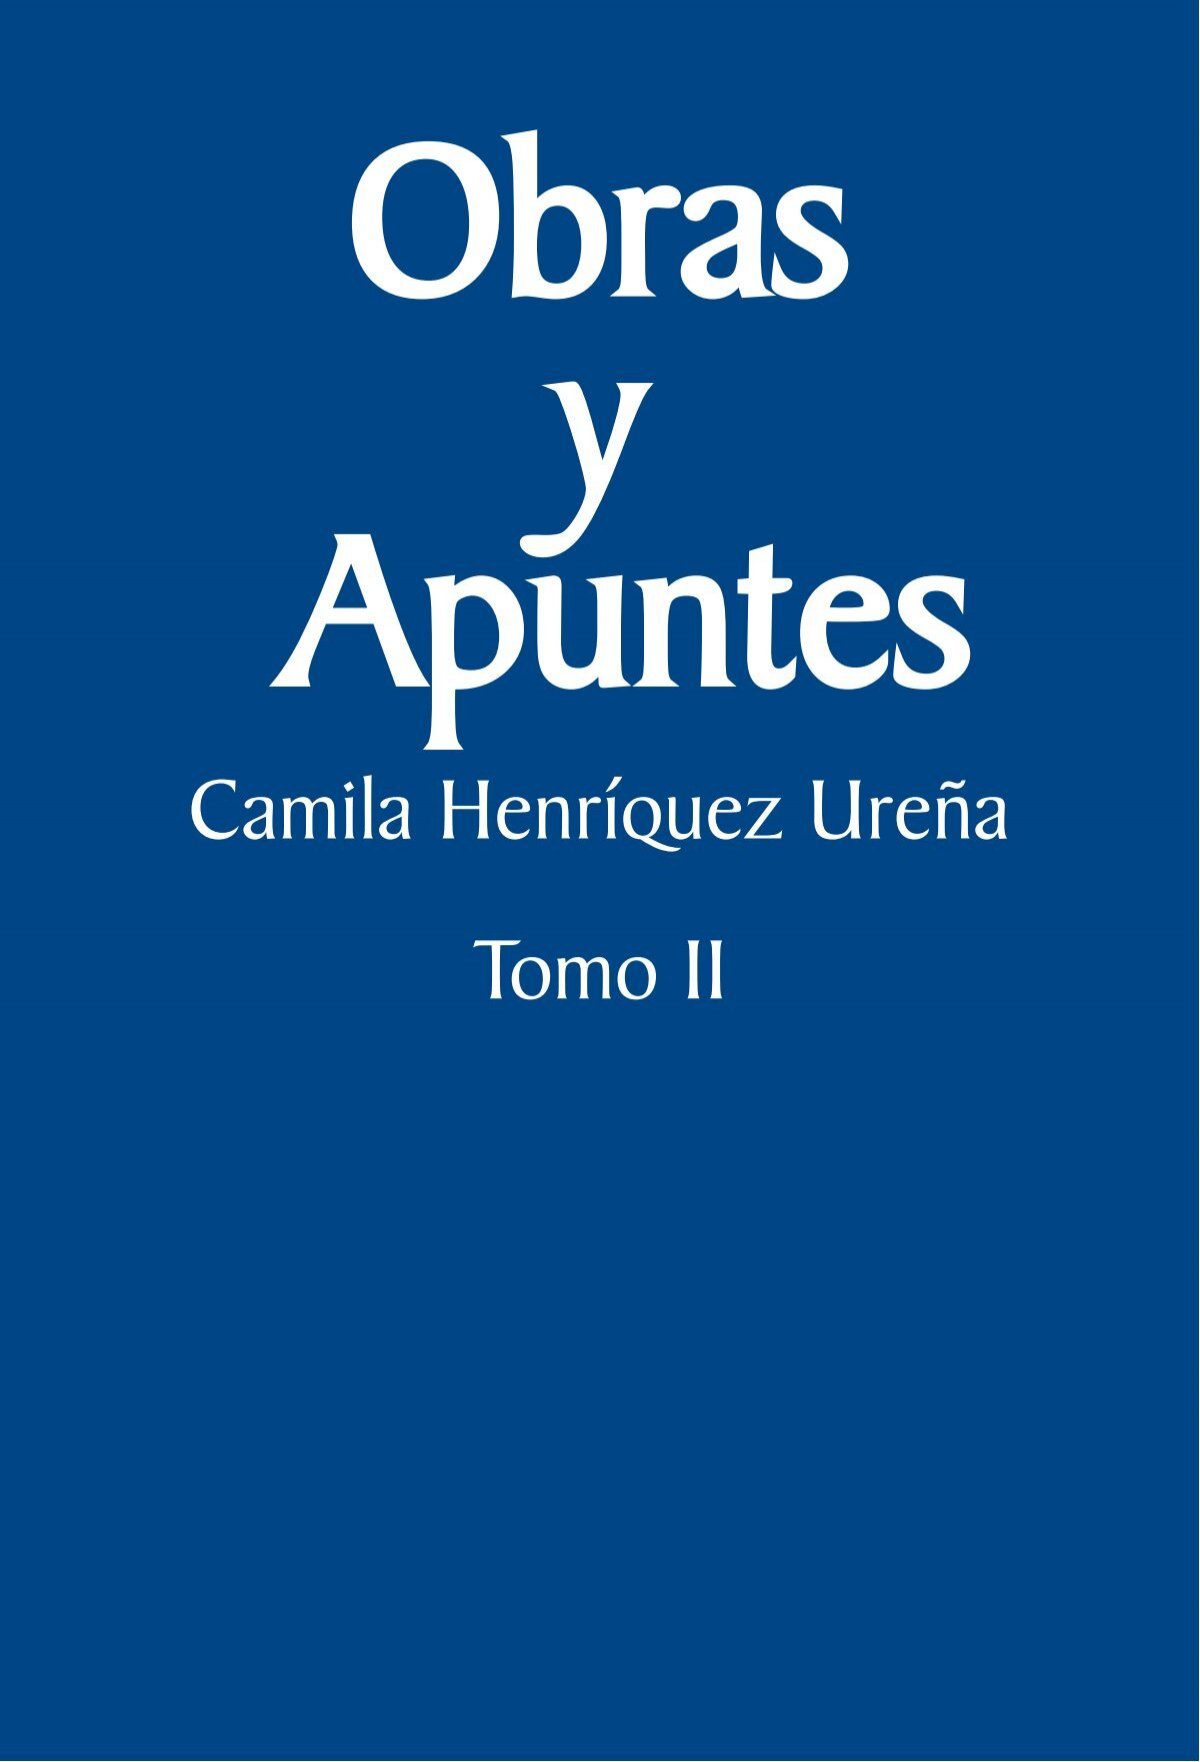 Obras y apuntes. Camila Henríquez Ureña, 2